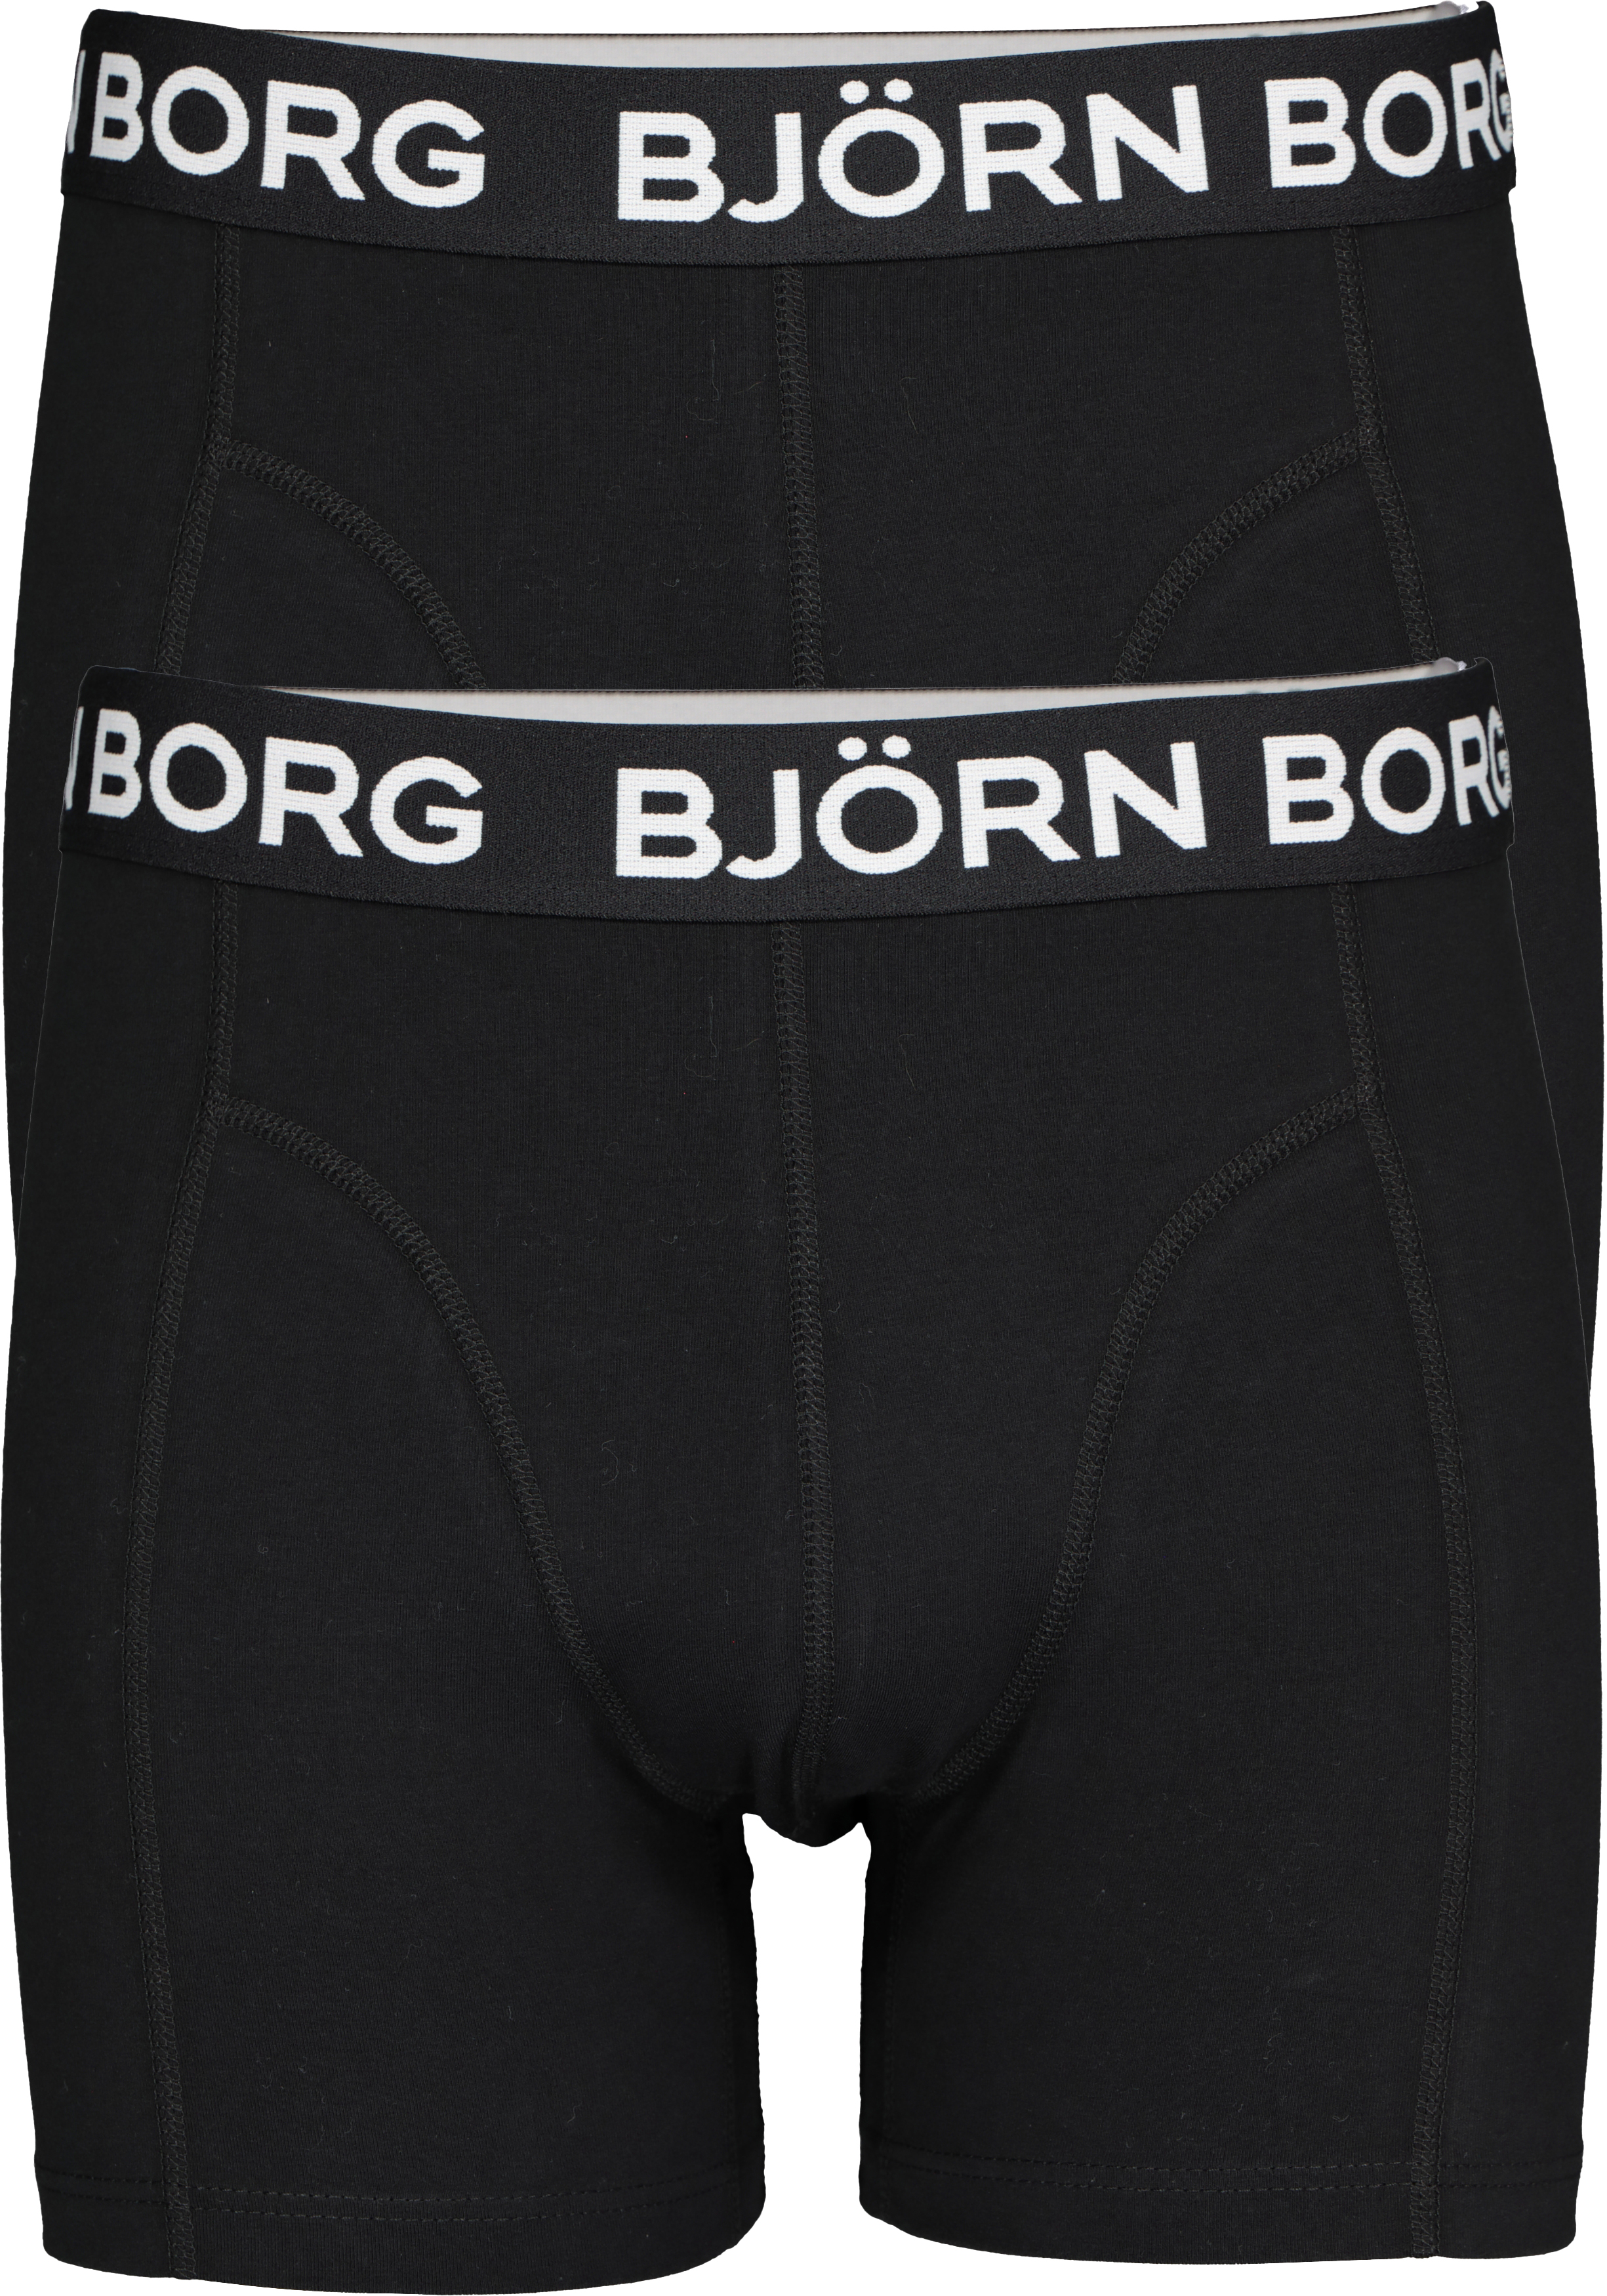 Bjorn boxershorts Core (2-pack), boxers lengte, zwart - Shop de nieuwste voorjaarsmode